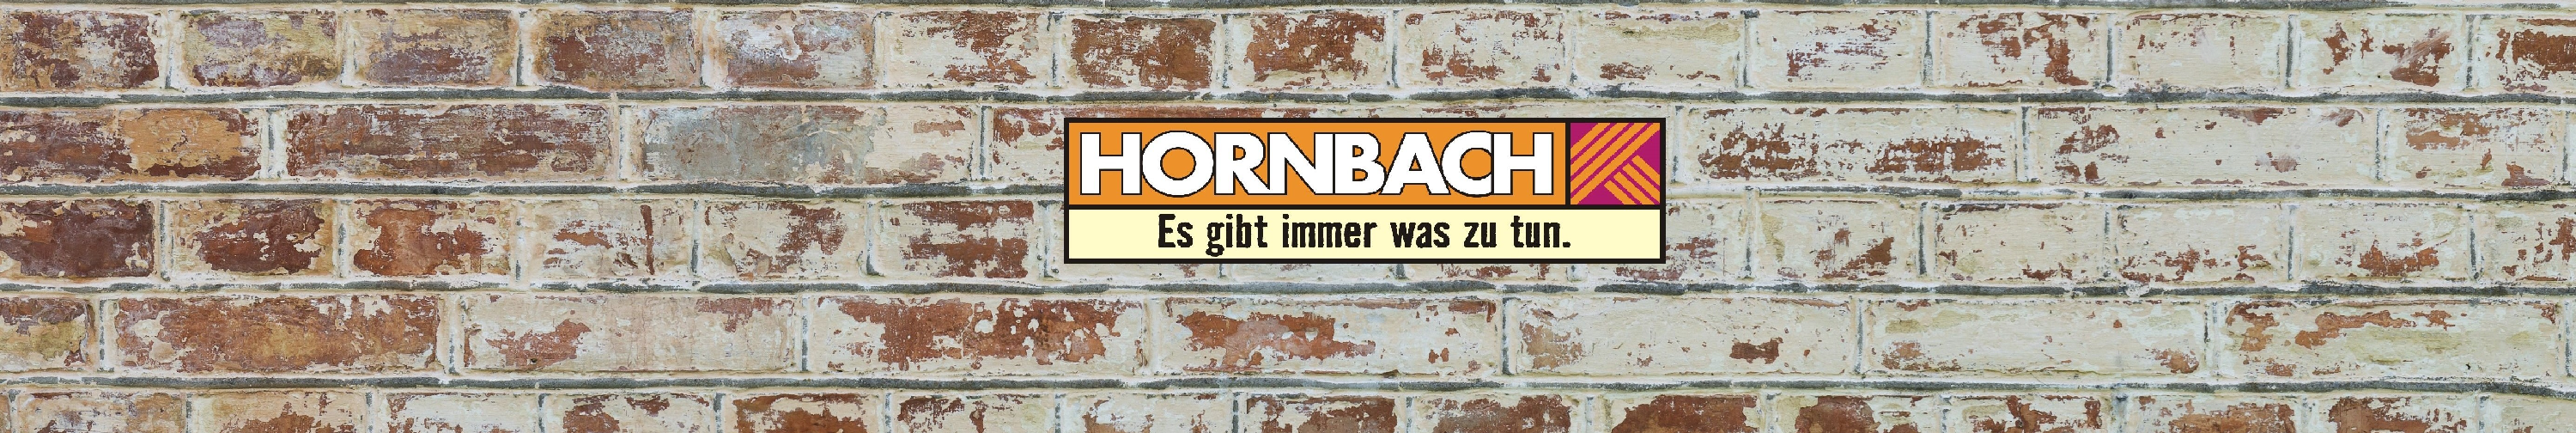 hornbach baumarkt gmbh background